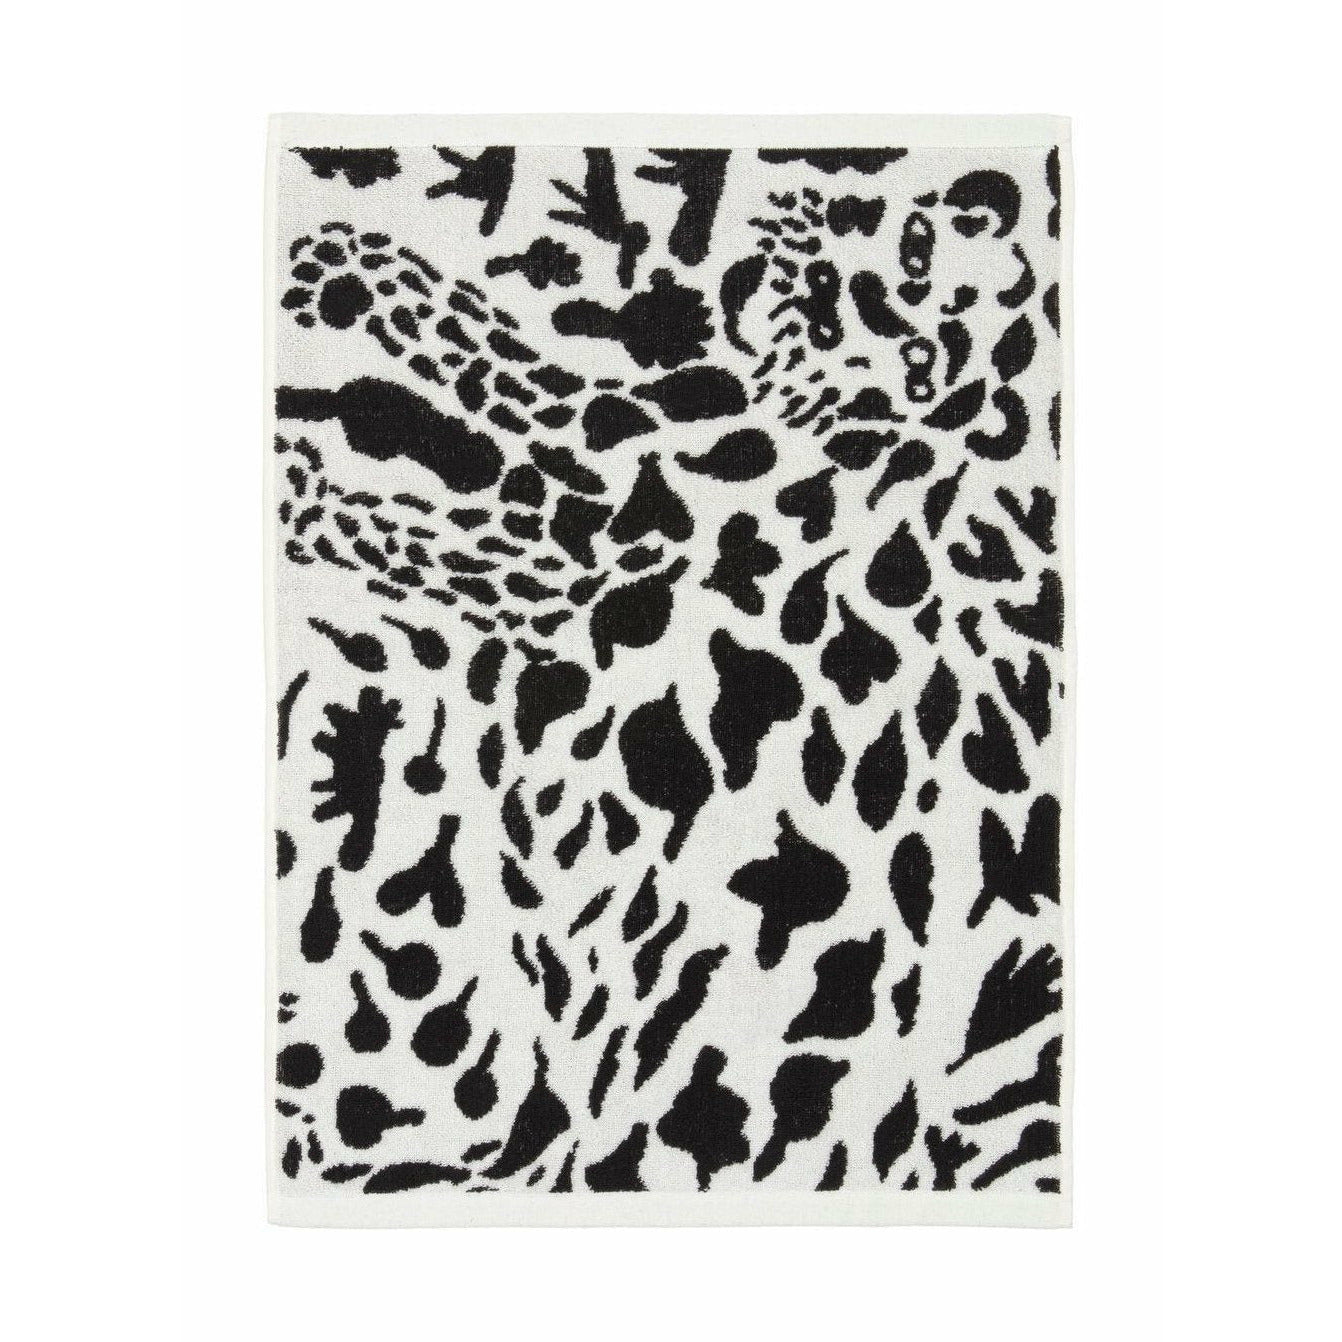 Iittala Oiva Toikka Badehåndklæde Cheetah, 70x140cm